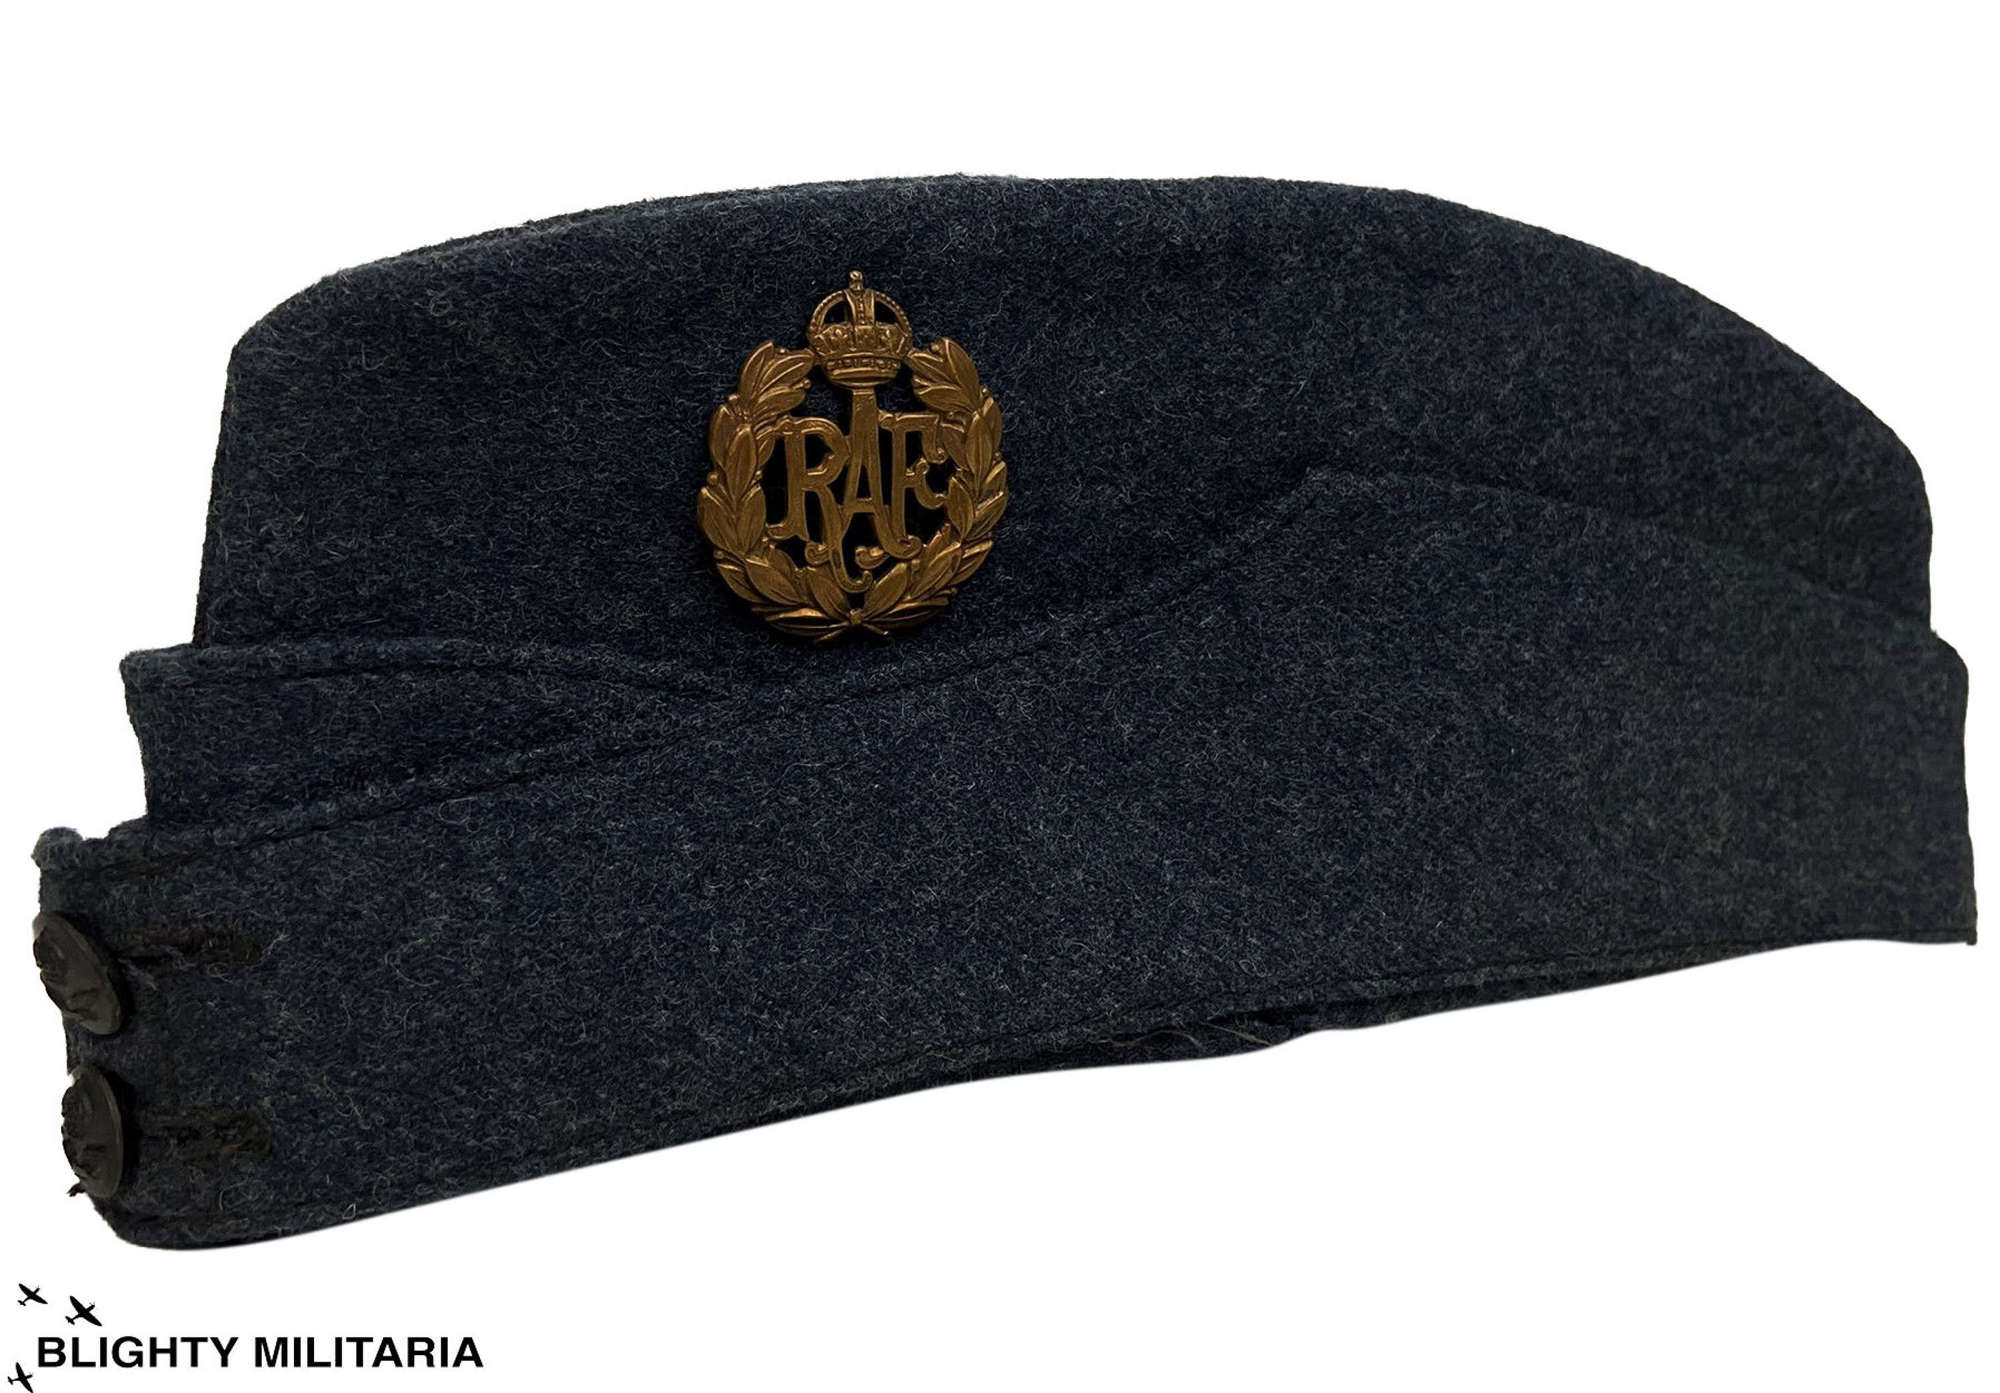 Original 1945 Dated RAF Ordinary Airman's Field Service Cap Size 6 3/8